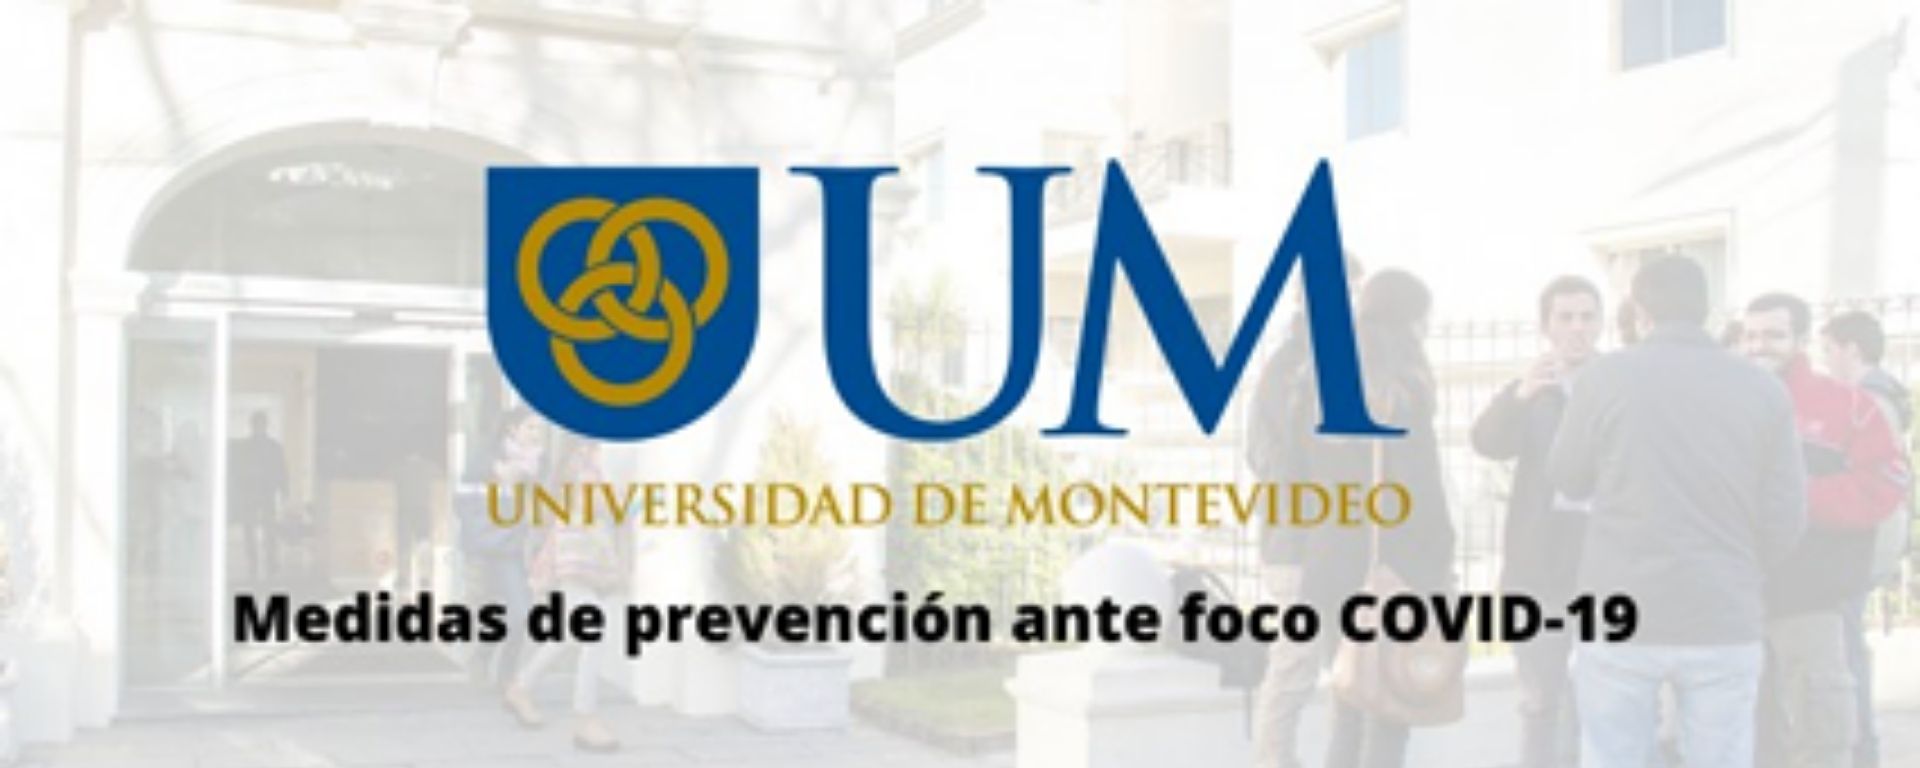 Logo de la UM y frase: "Medidas de prevención ante foco de COVID-19"